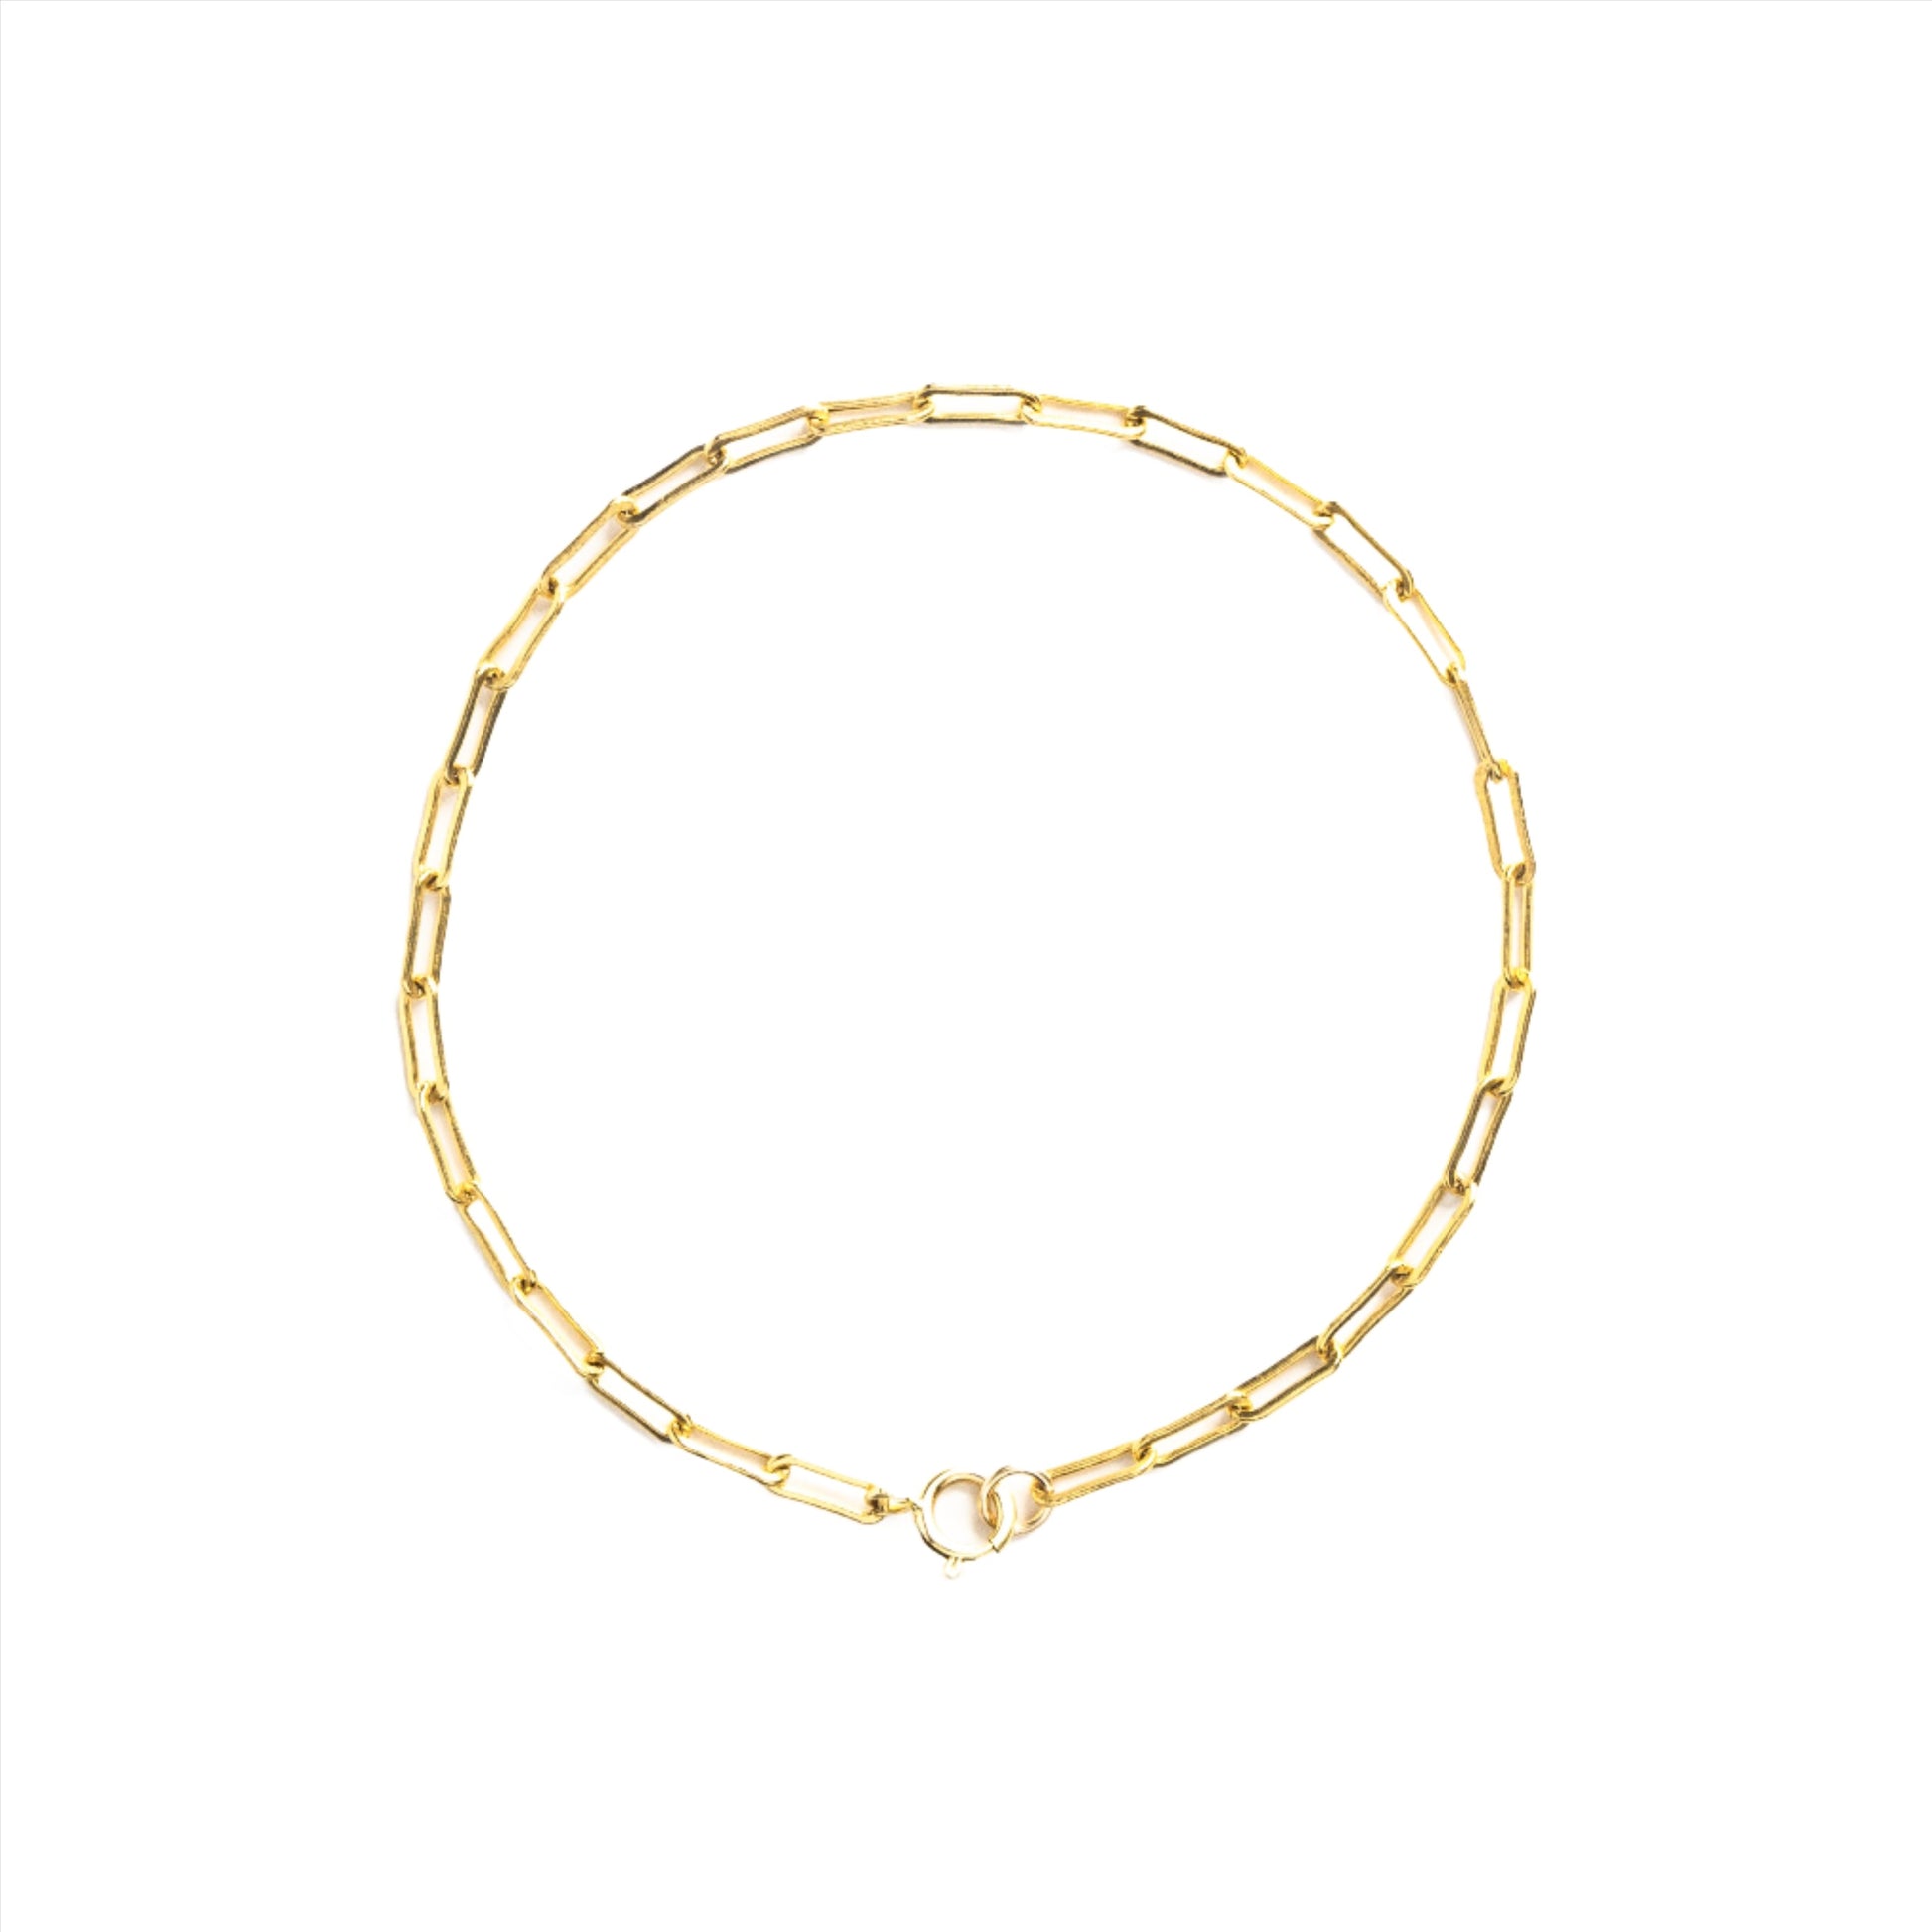 Paperclip Bracelet Gold Filled